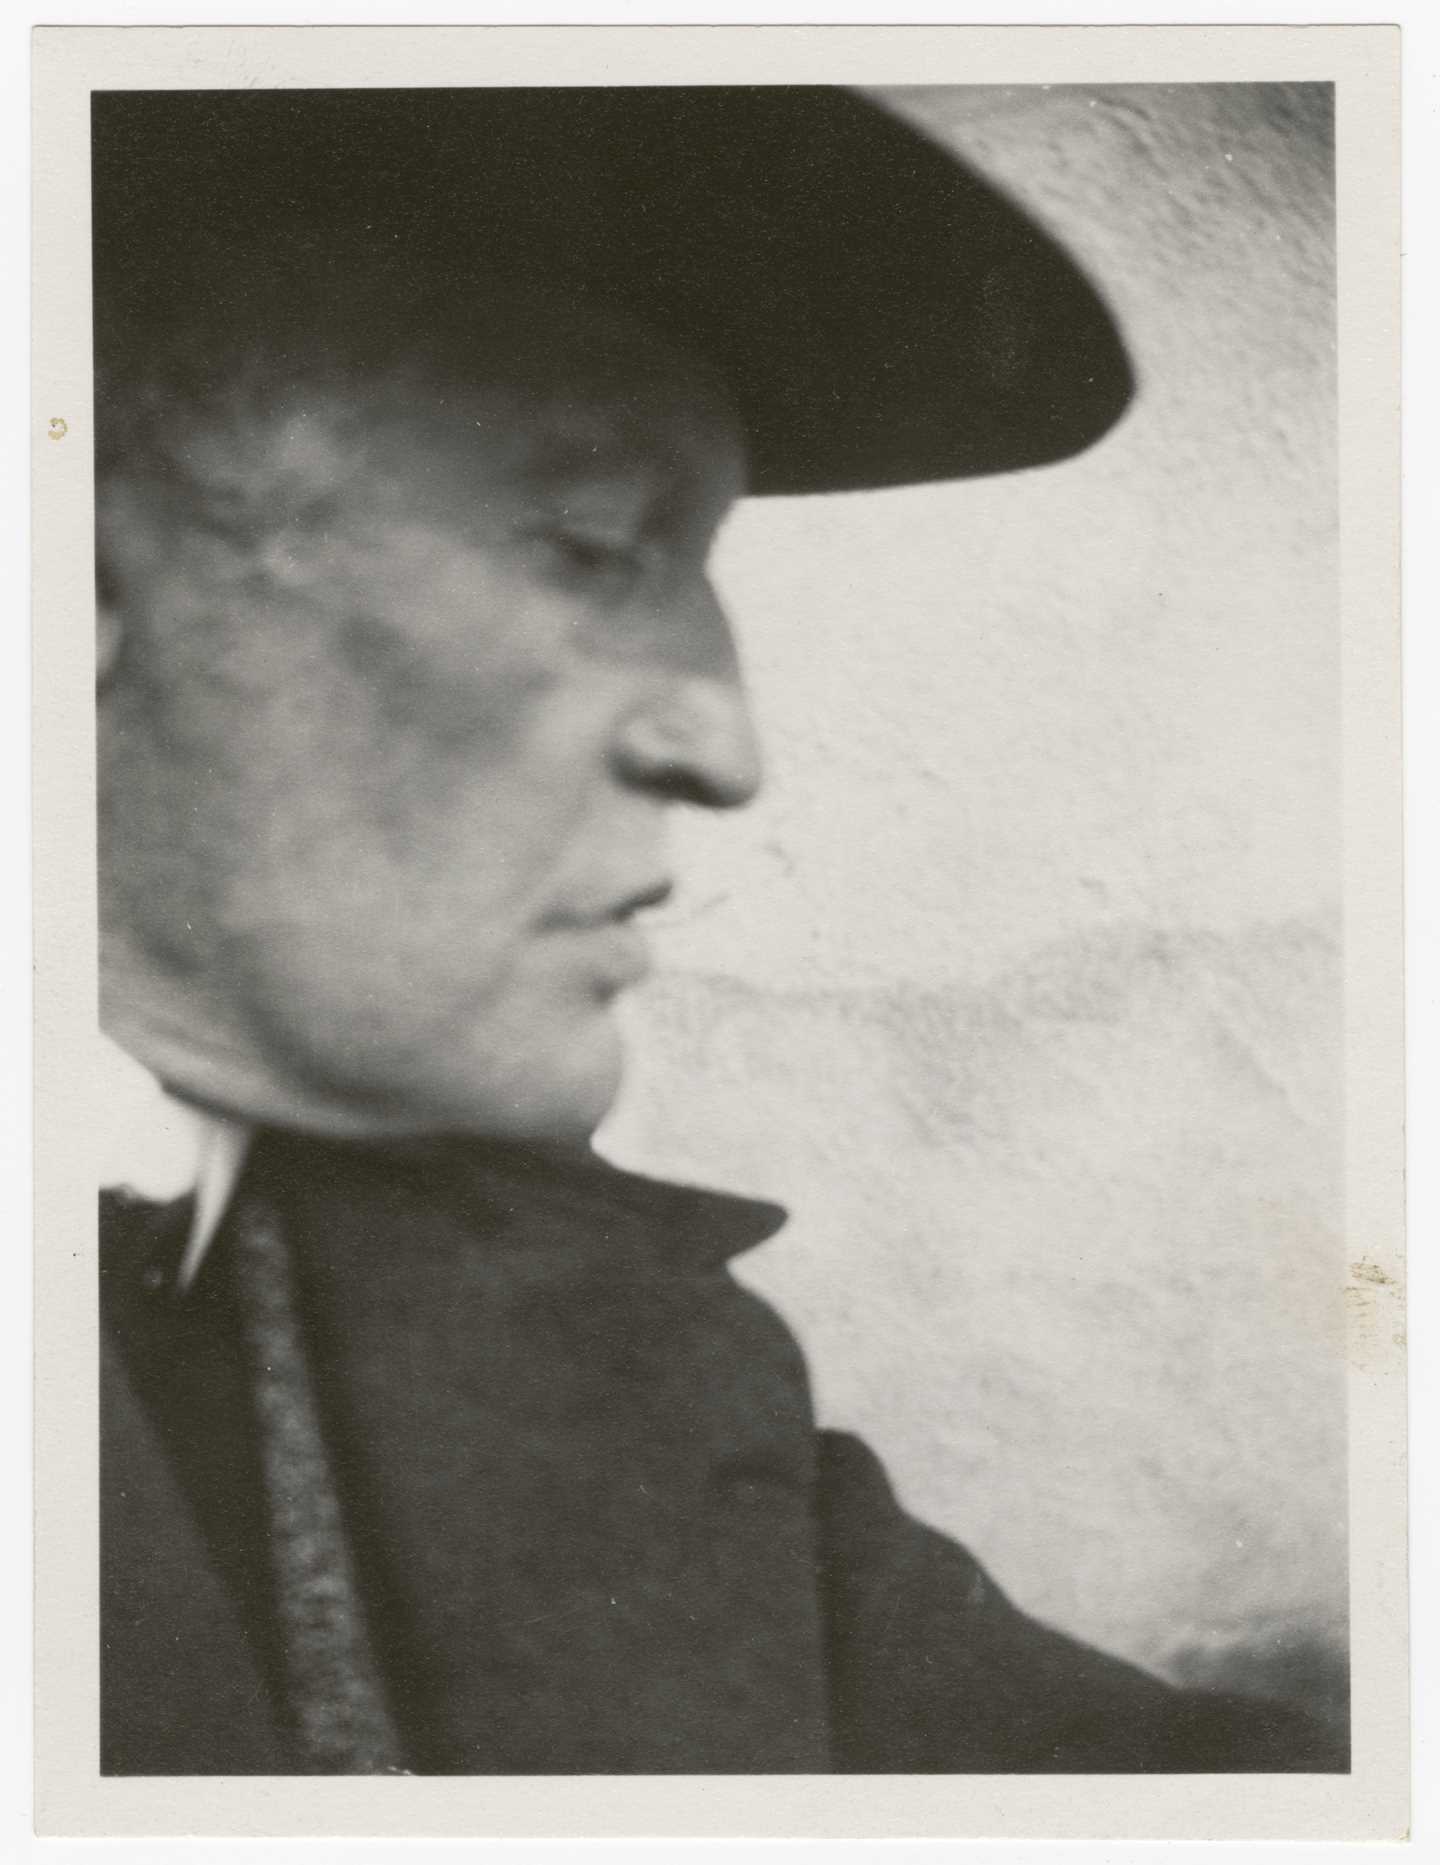  Edvard Munch: Edvard Munch med hatt, i profil mot høyre. Sølvgelatin, 1930. Foto © Munchmuseet